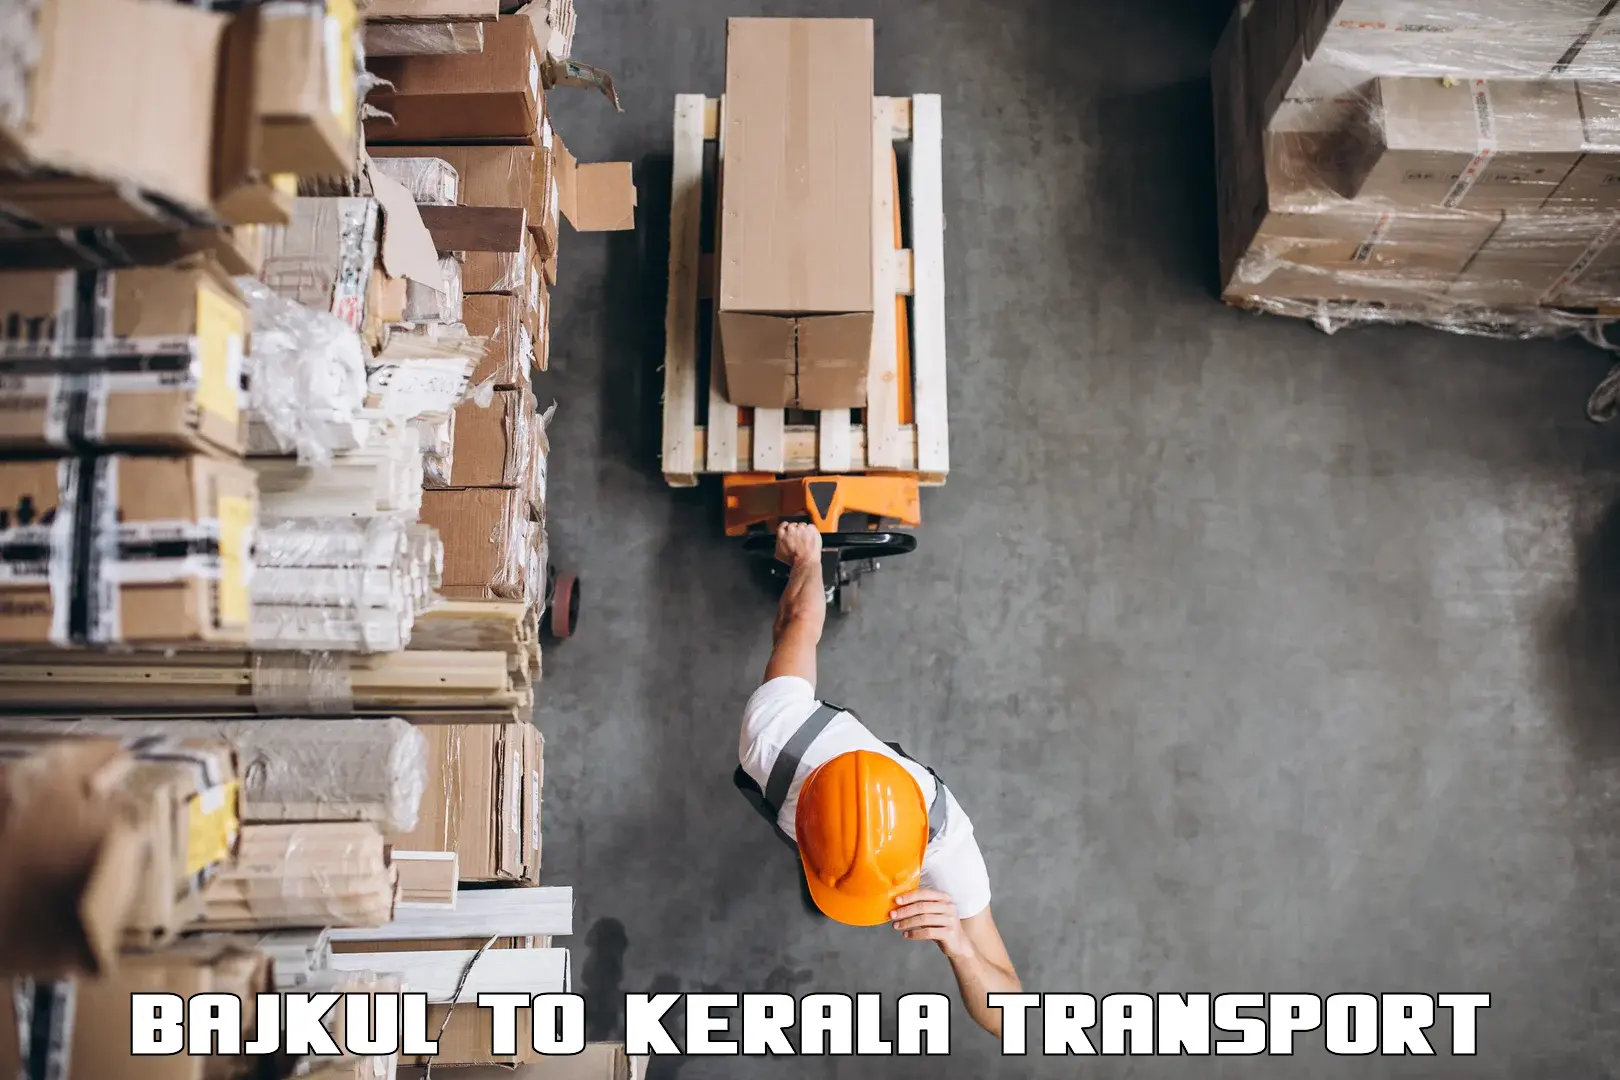 Daily parcel service transport Bajkul to Kattappana